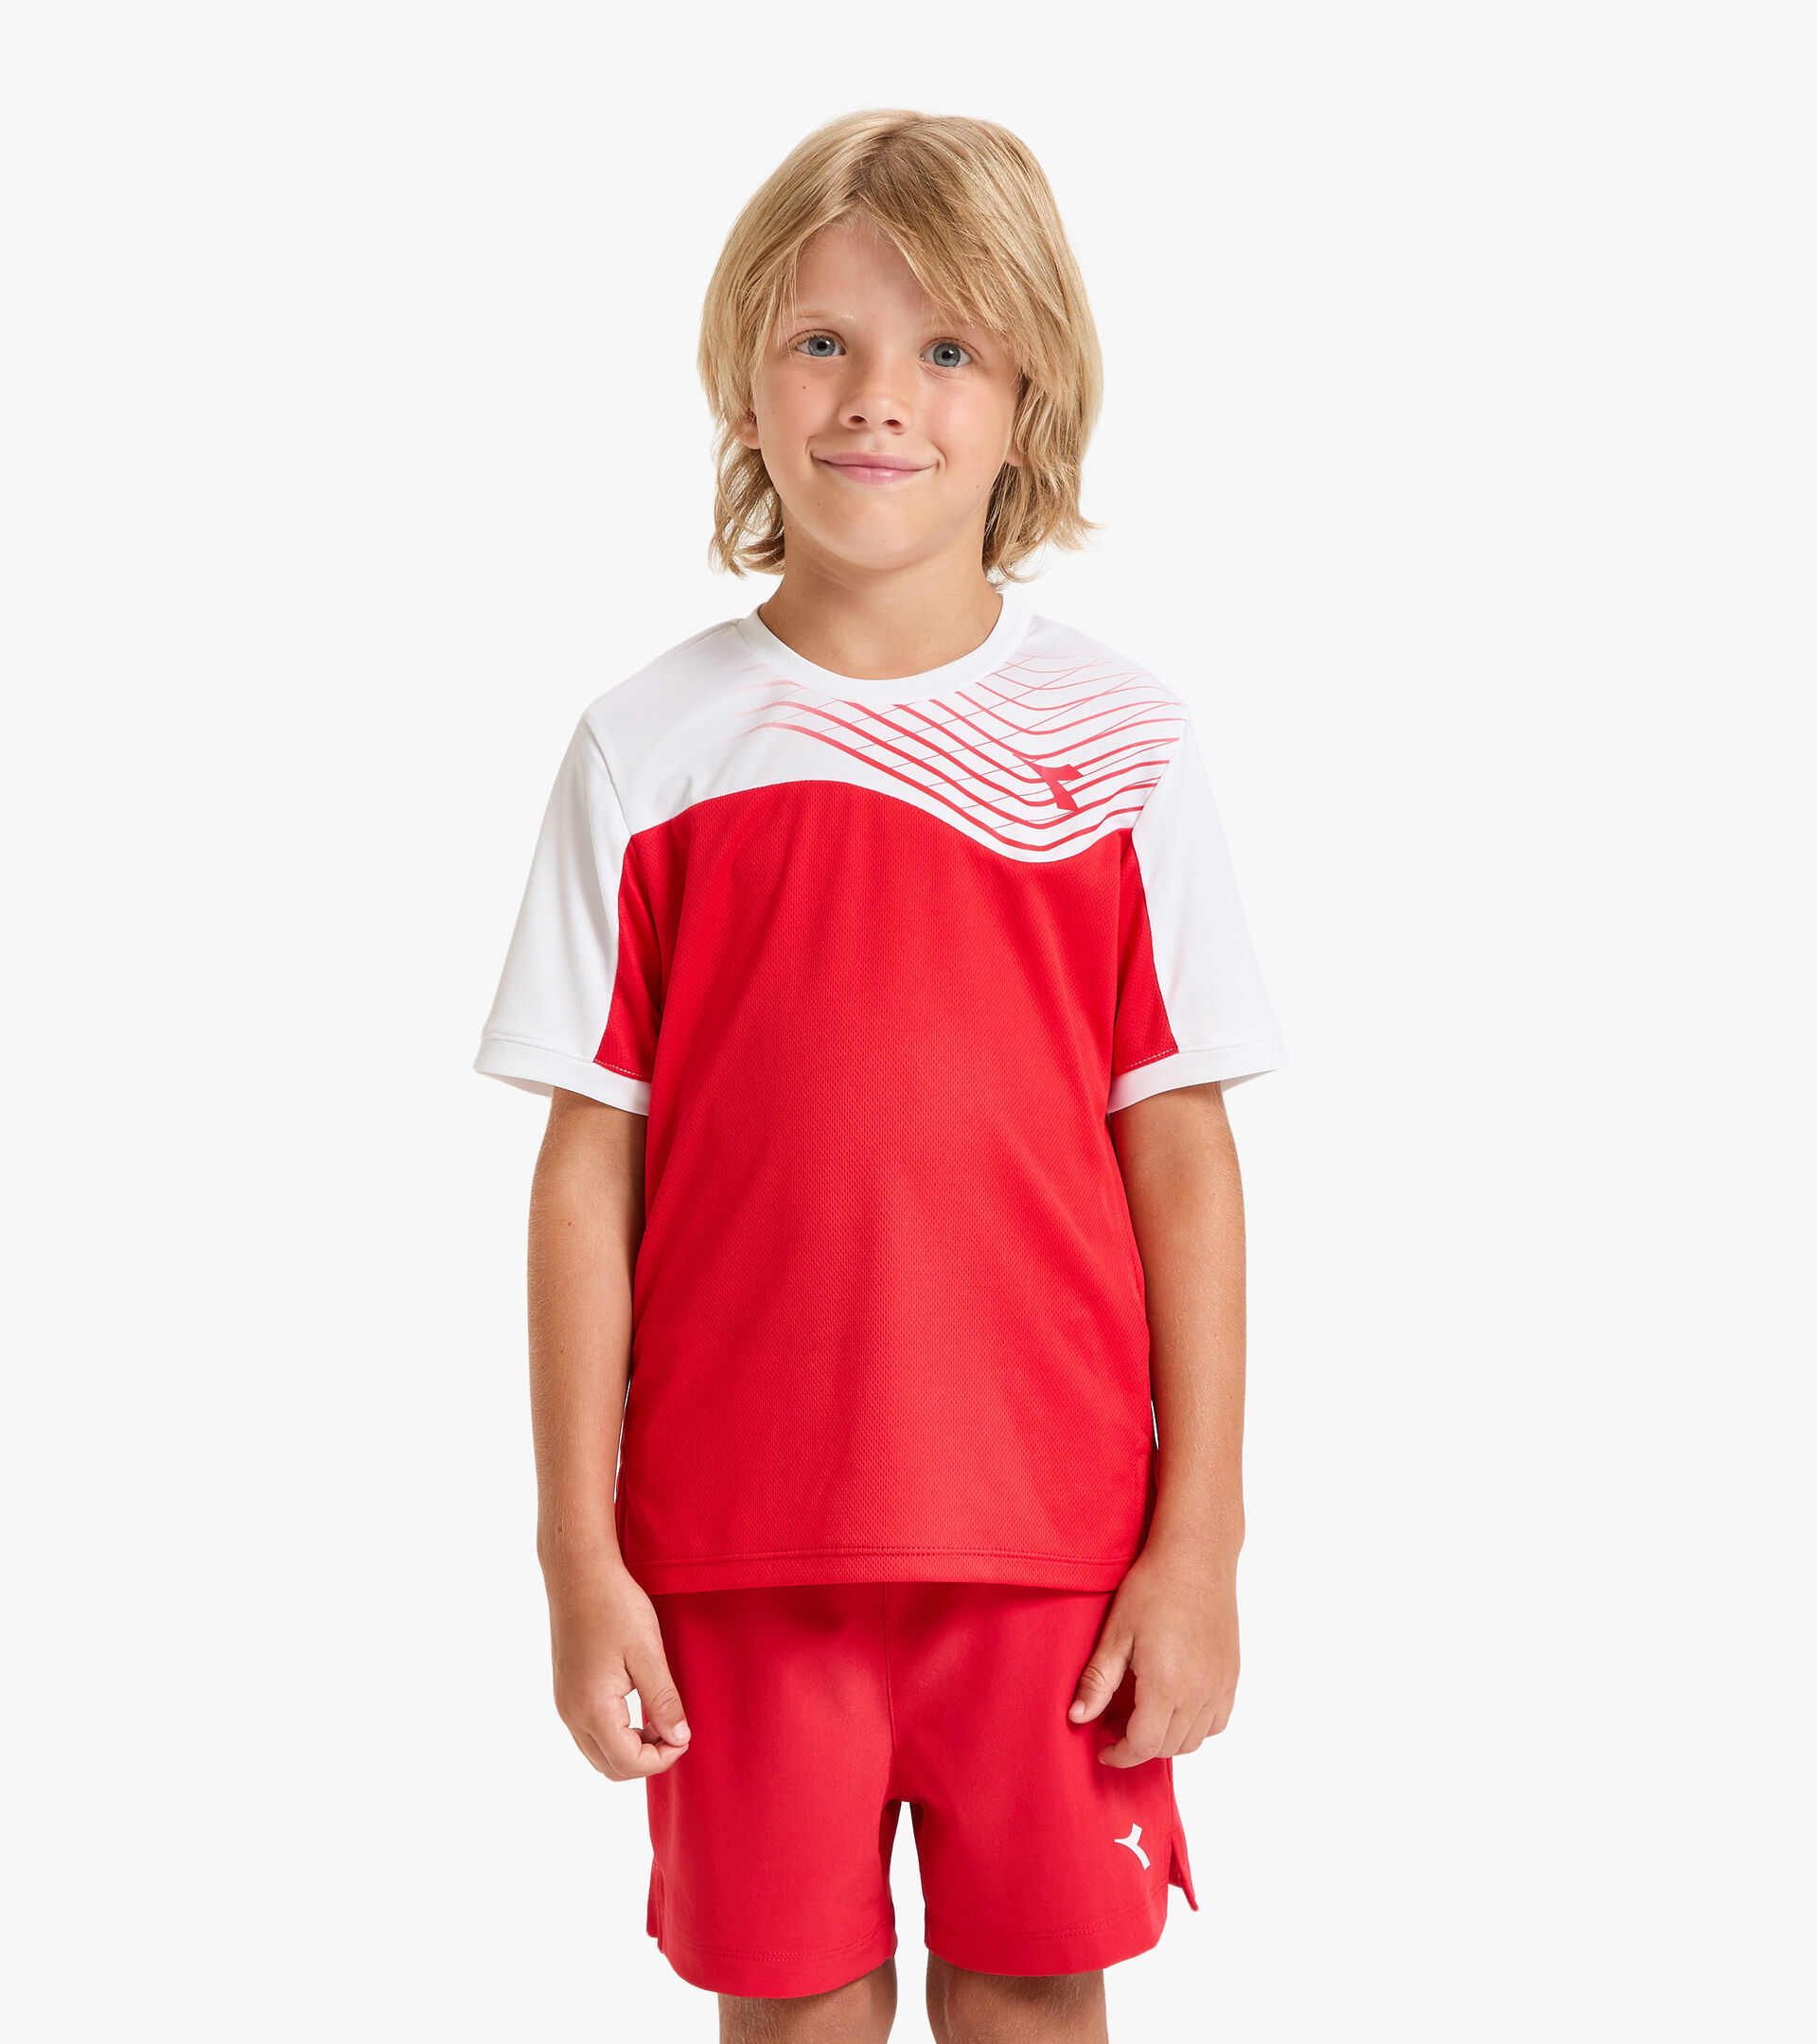 Camiseta de tenis - Junior J. T-SHIRT COURT ROJO TOMATE - Diadora